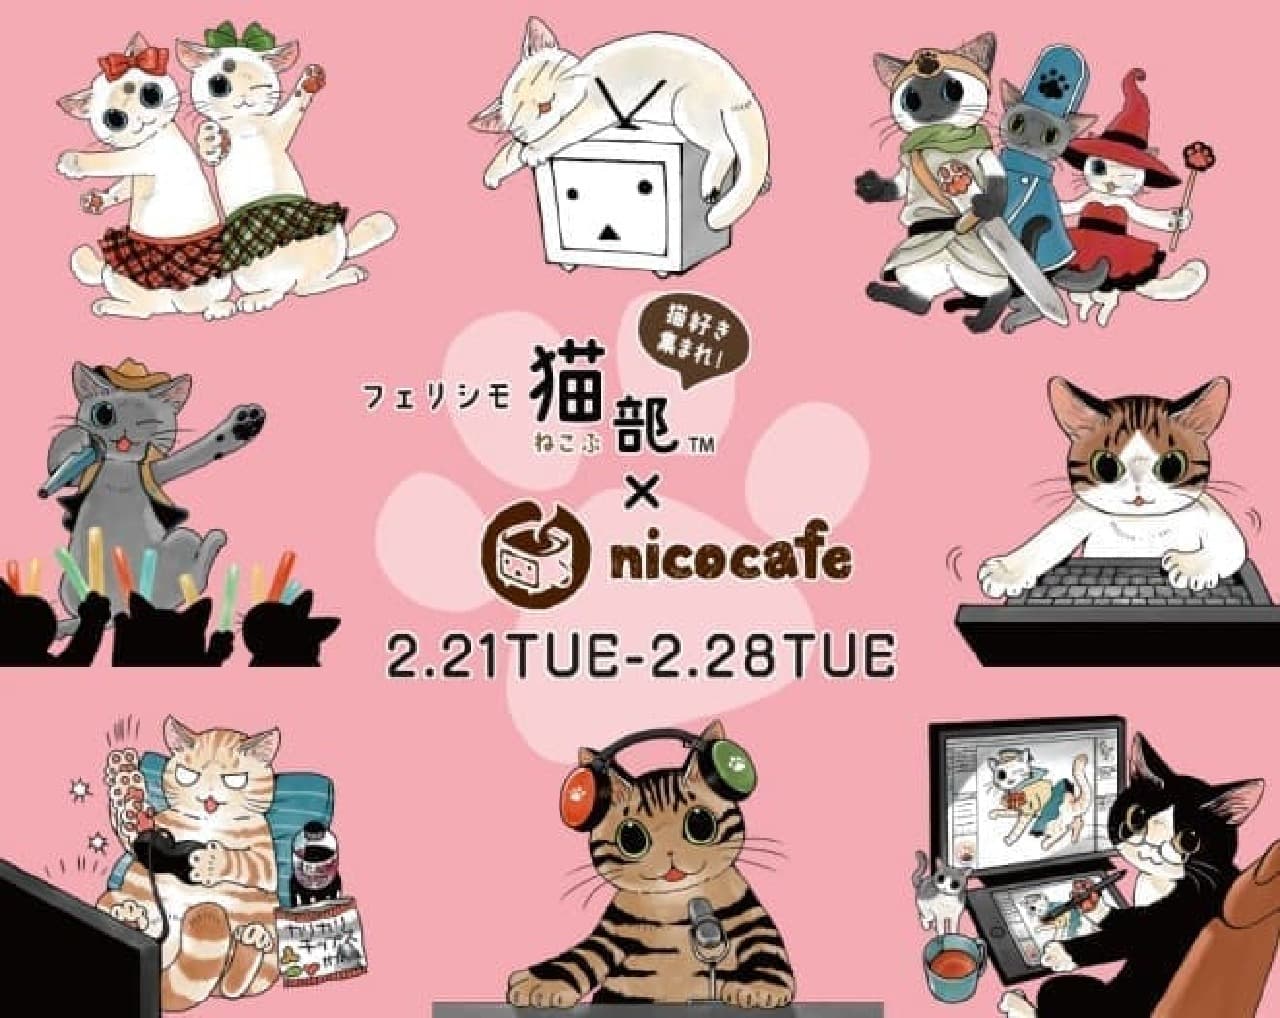 『フェリシモ猫部 × nicocafe コラボカフェ』が、2月21日から28日まで開催